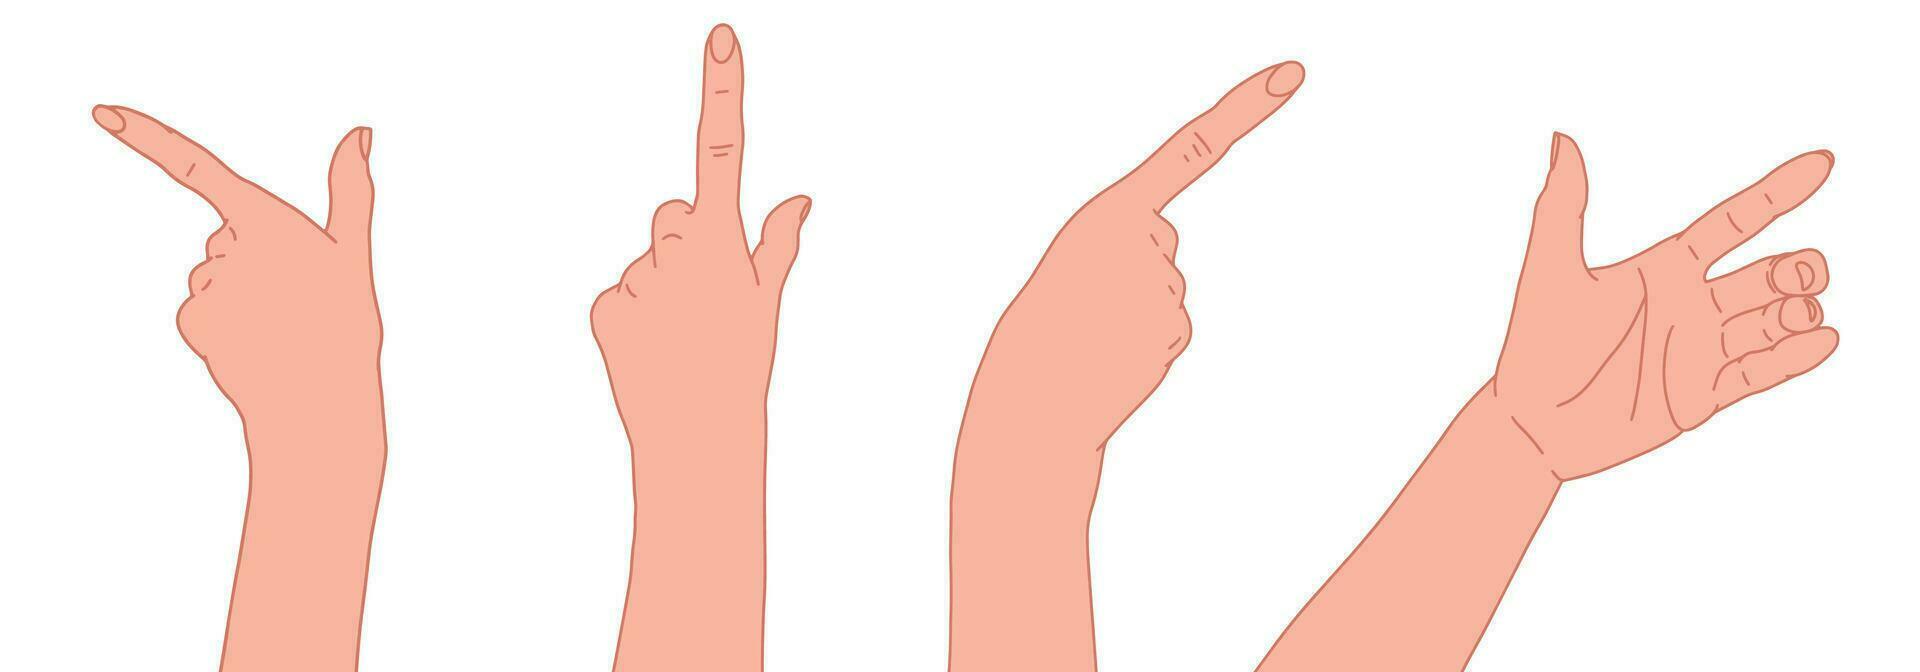 uppsättning av händer som visar riktning. gestikulerar händer. pekfinger tecken. öppen hand vektor